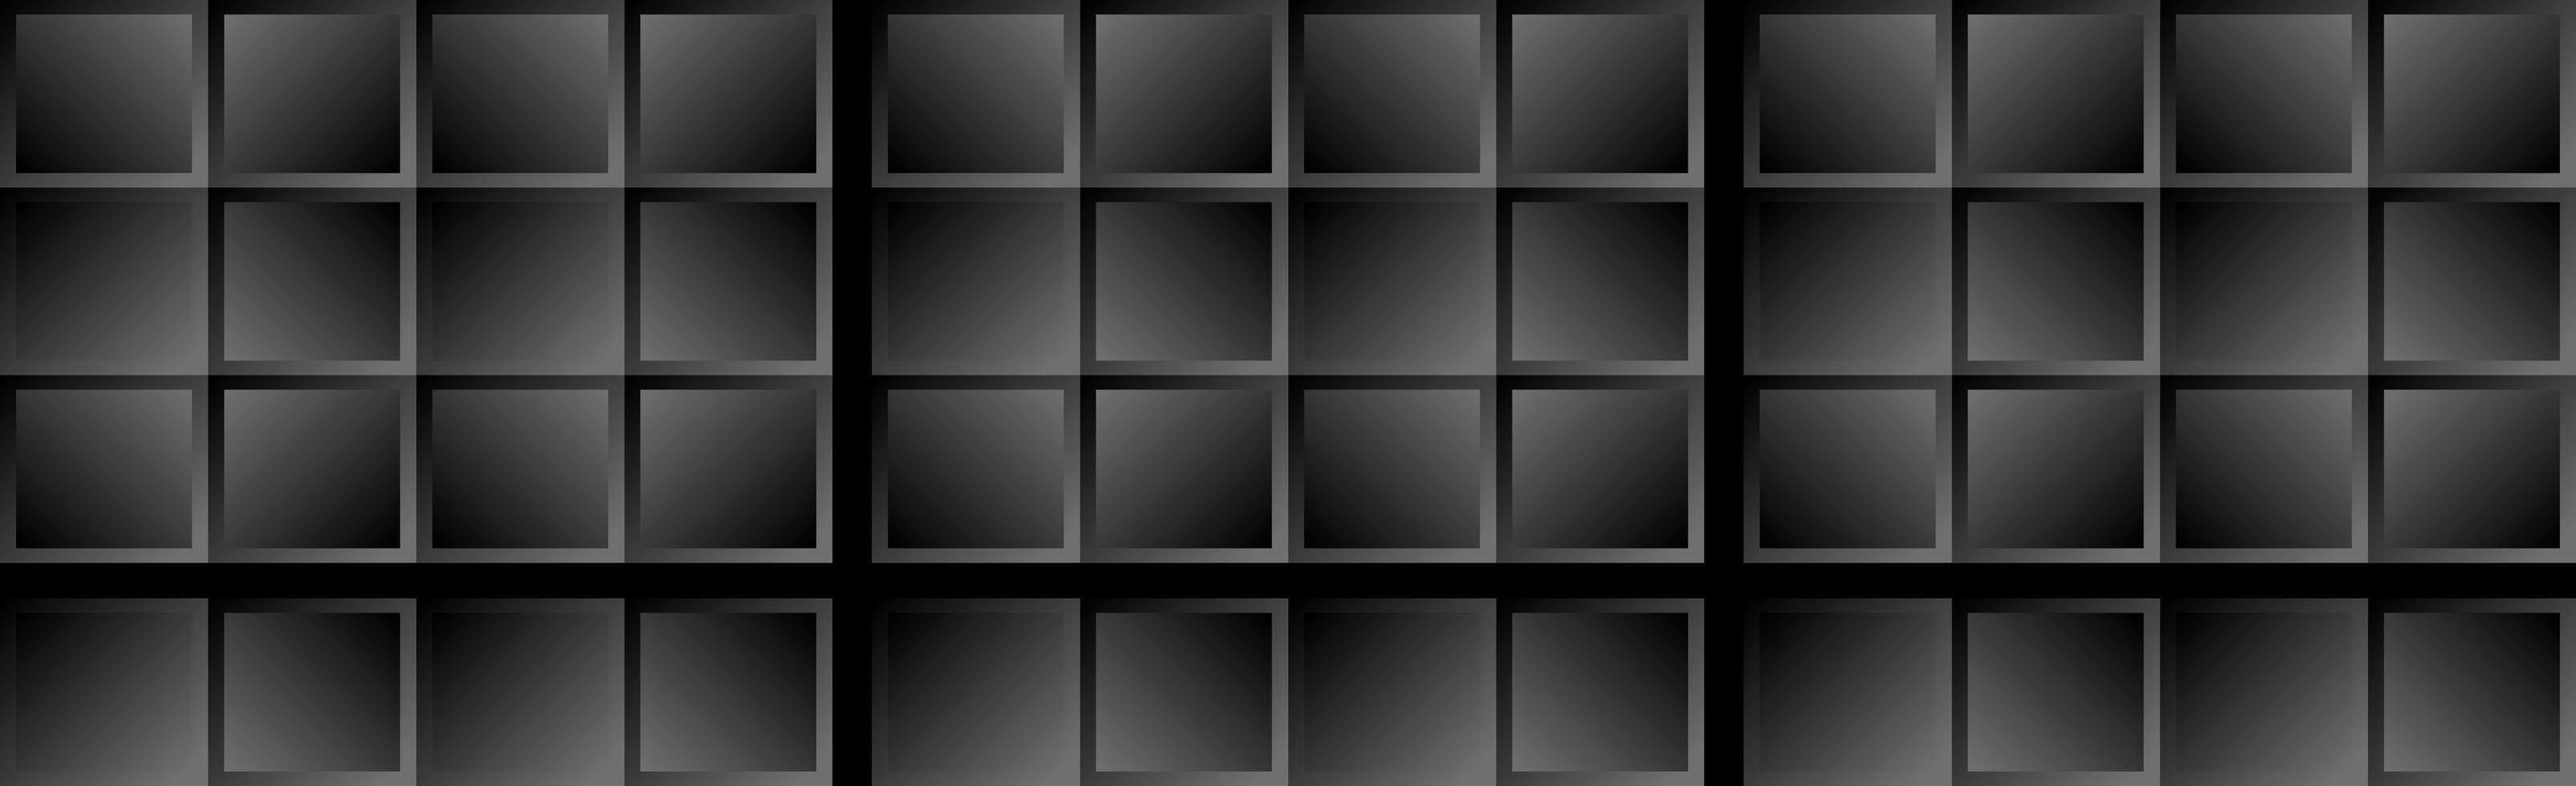 textura de fondo abstracto negro con líneas diagonales y formas geométricas, se puede utilizar en el diseño de portadas, carteles, postales, folletos, fondo de sitios web o publicidad - vector